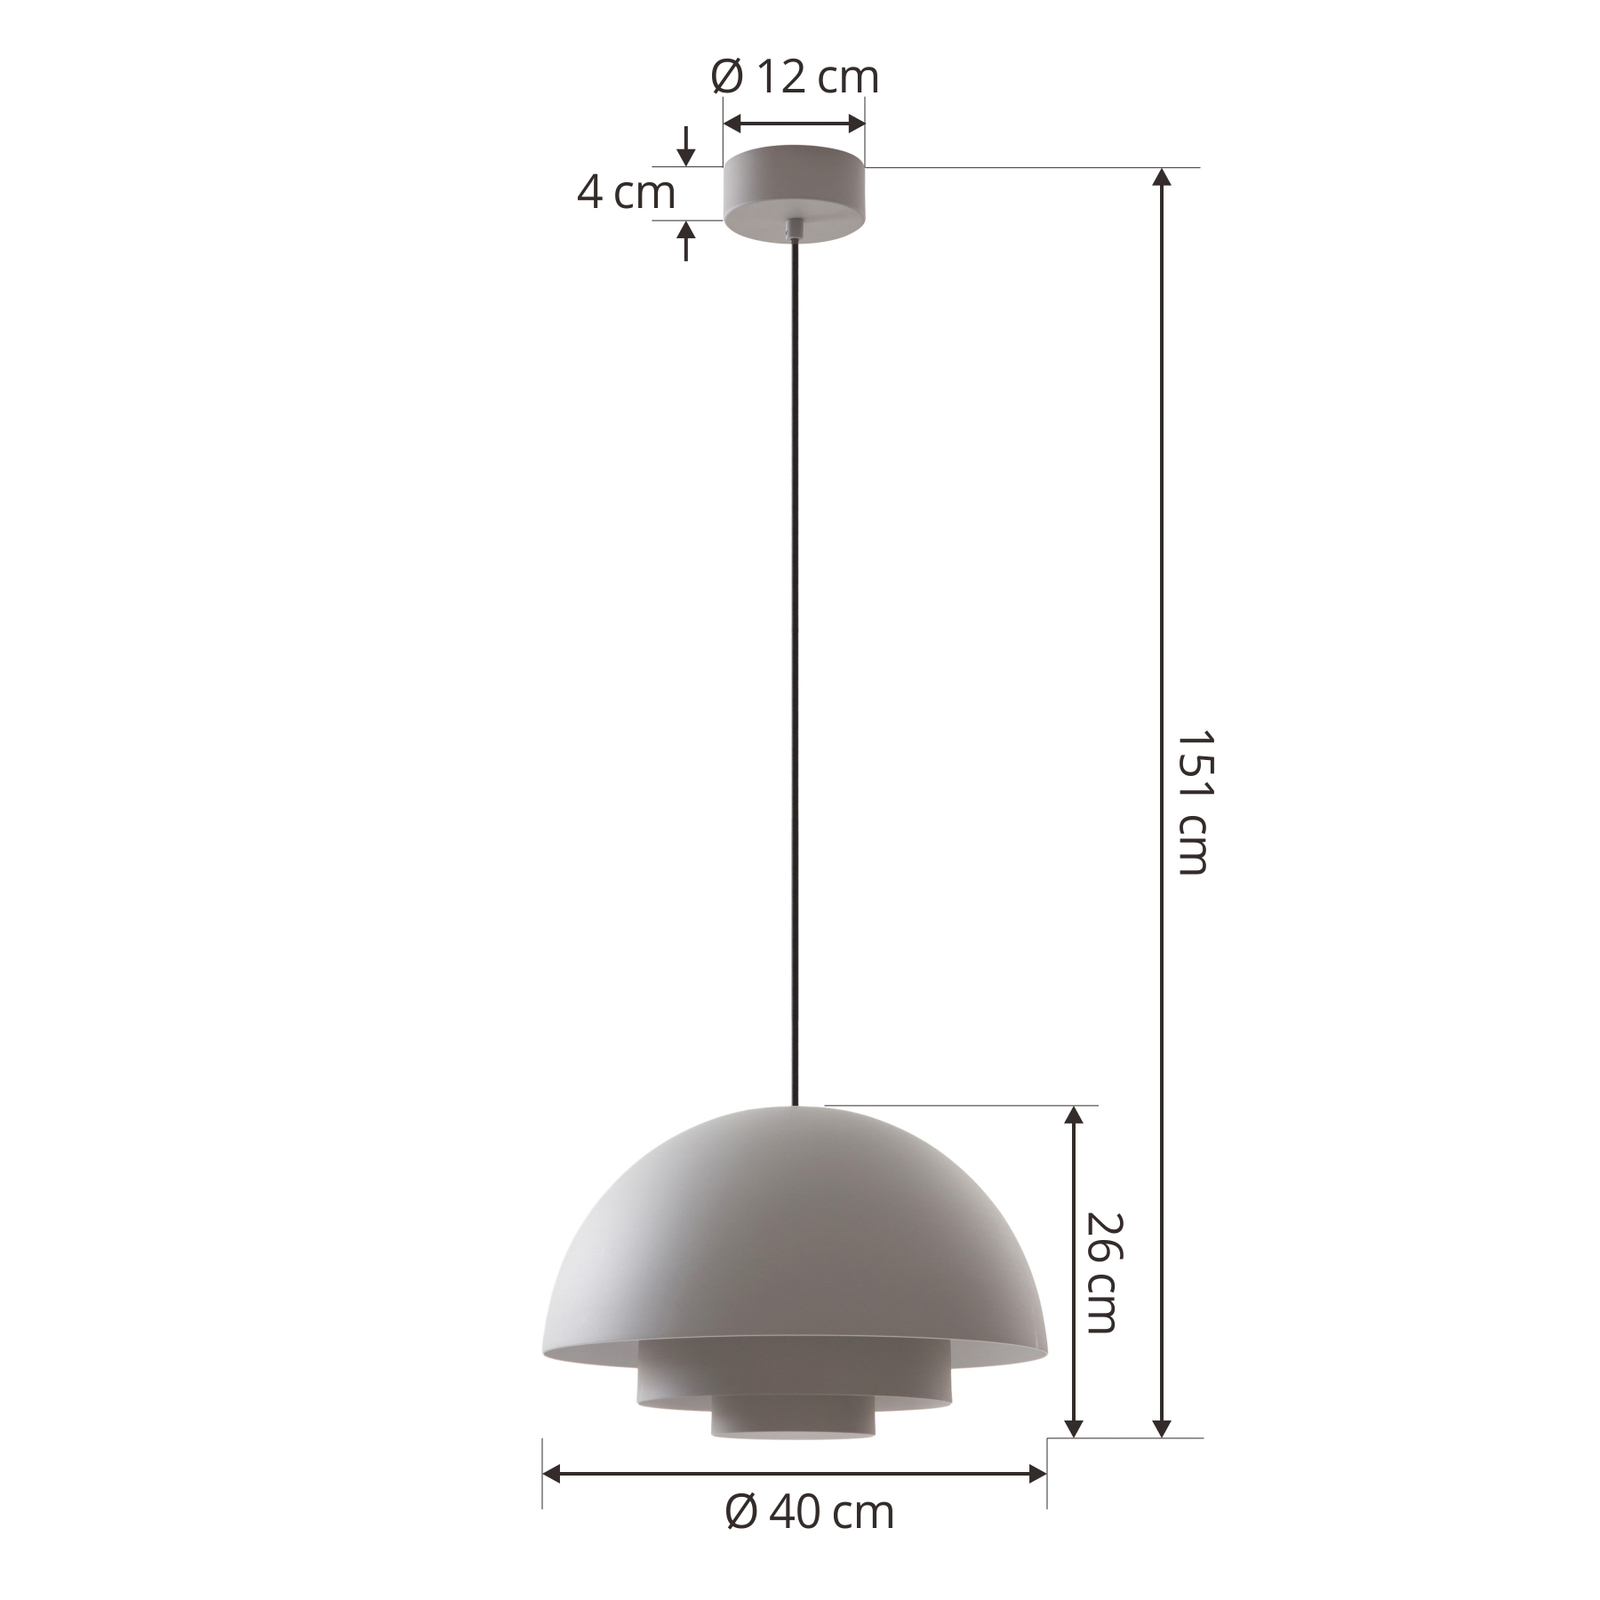 Lucande Nymara LED-es függőlámpa, szürke, alumínium, Ø 40 cm